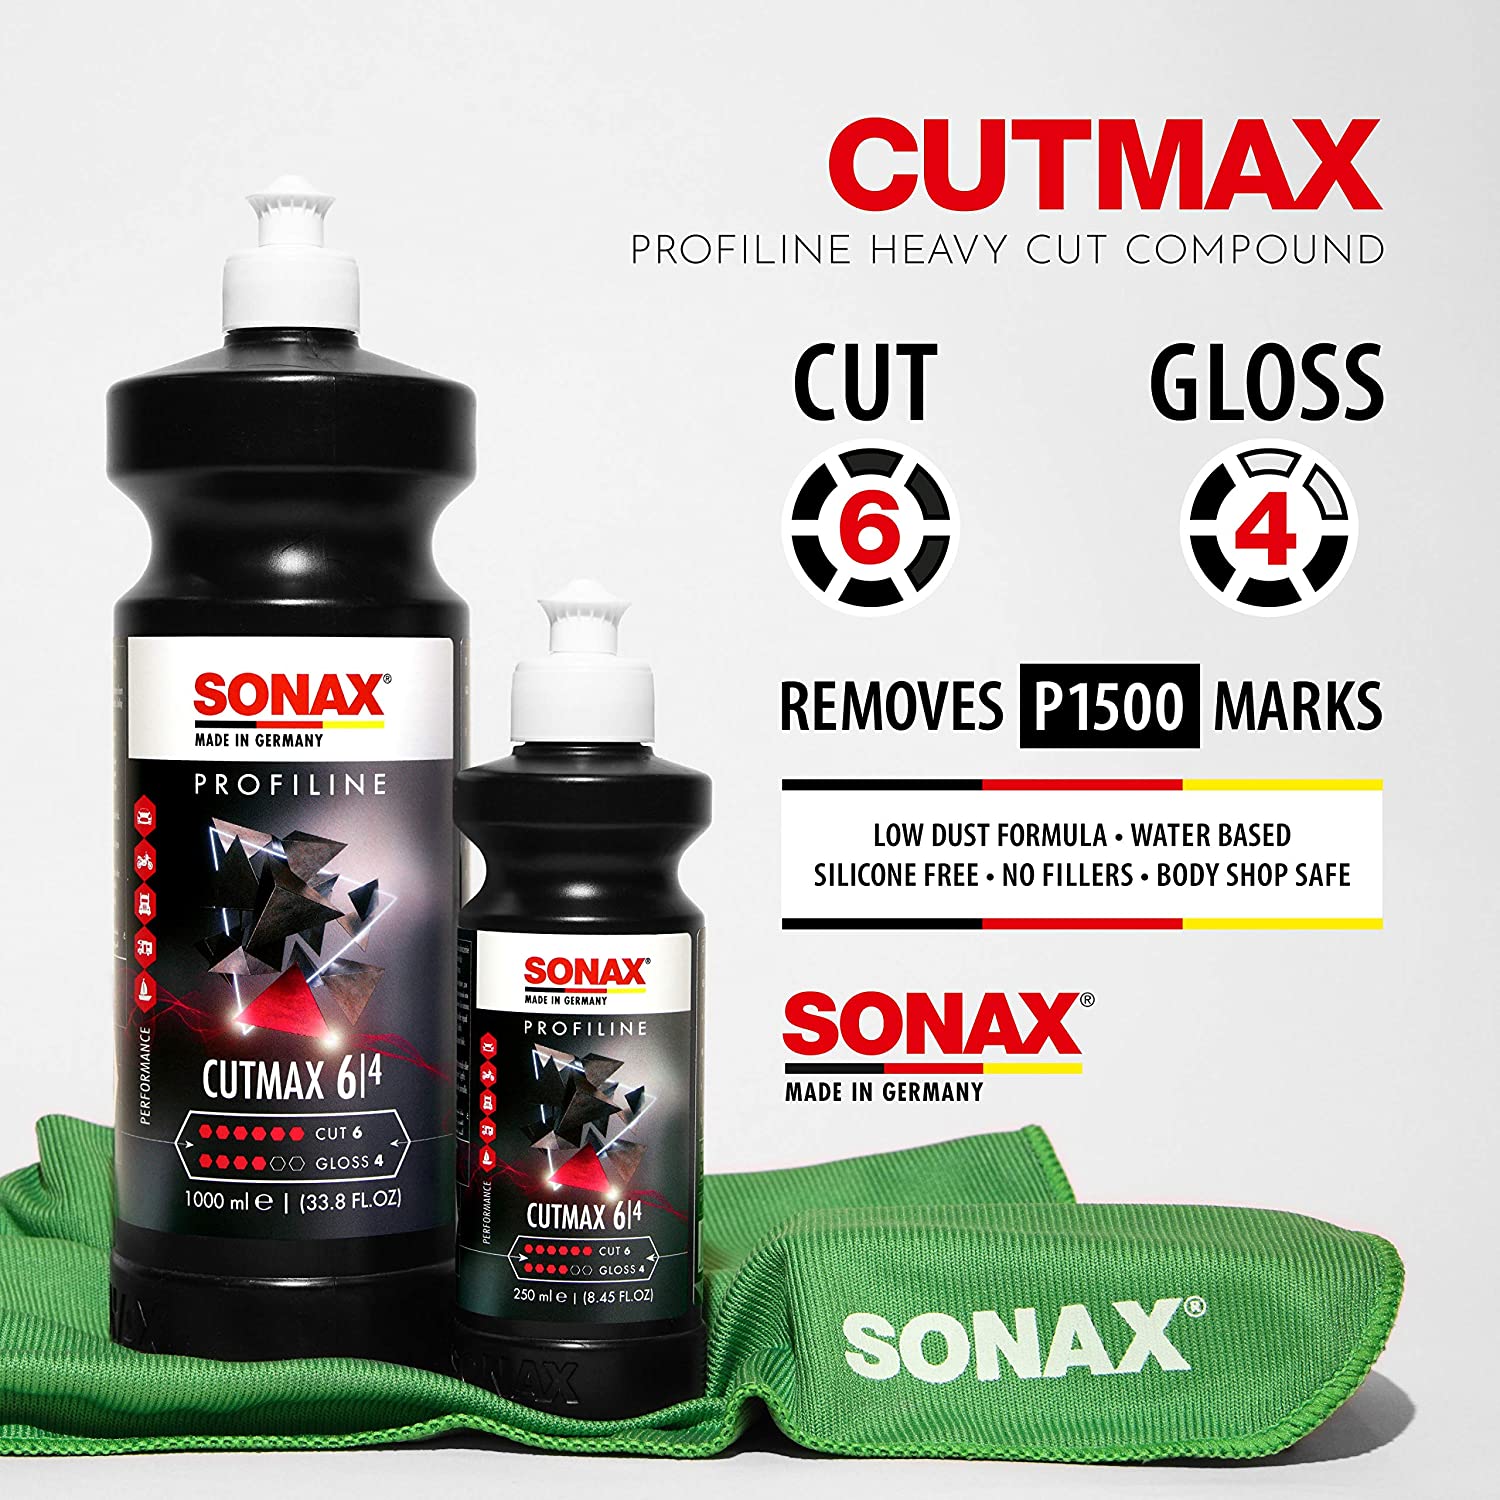 Sonax Cutmax Cutting Compound